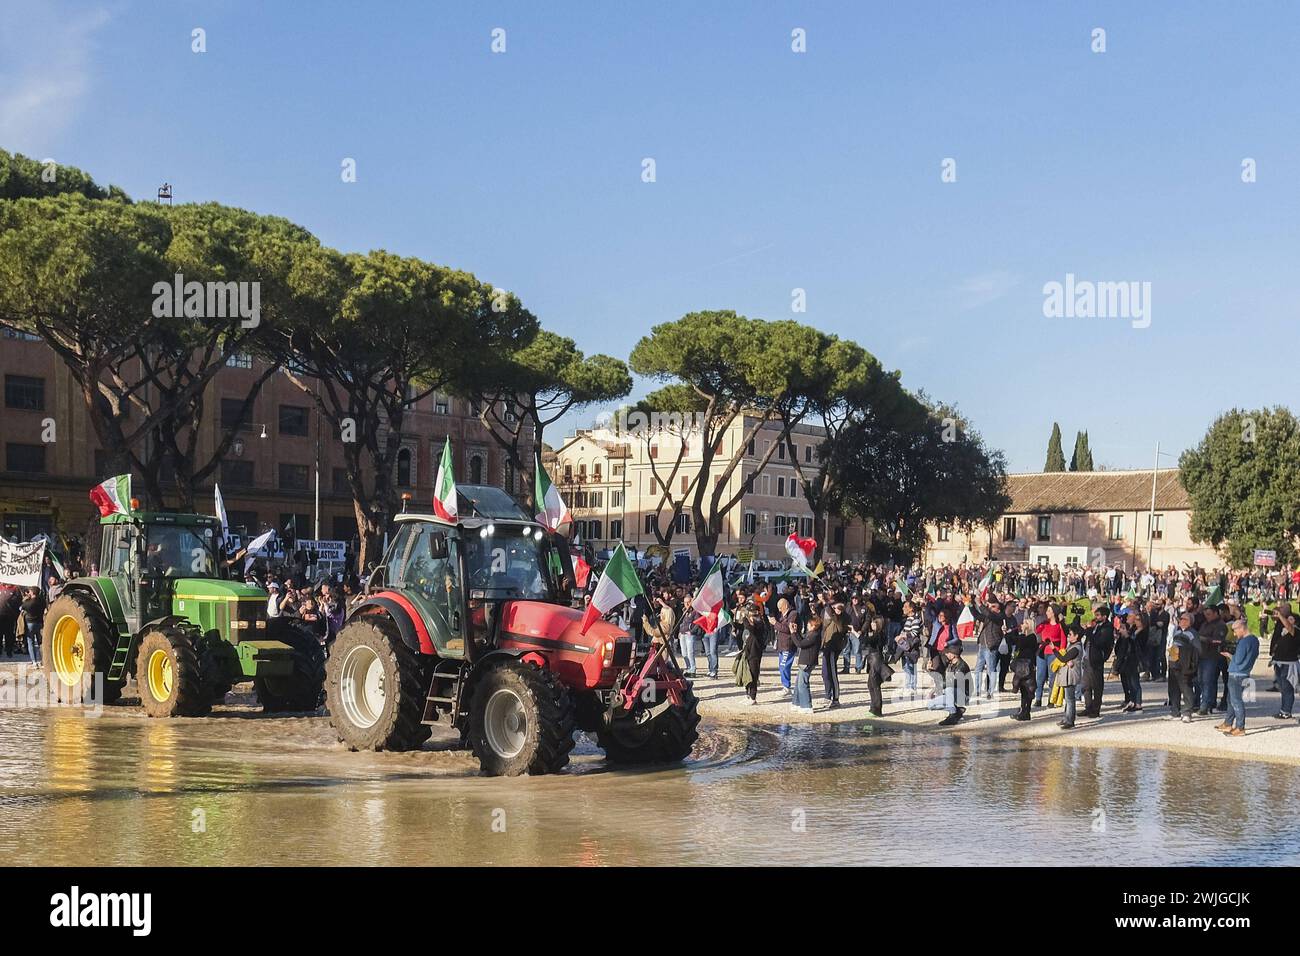 Notizie - dimostrazioni degli agricoltori a Roma gli agricoltori organizzano dimostrazioni in tutta Italia per settimane per chiedere tasse più basse sul carburante, prezzi migliori per i loro prodotti, e un allentamento delle normative ambientali dell'UE che, secondo loro, rendono più difficile competere con prodotti stranieri meno costosi. Oggi, 15 febbraio 2024, si sono riuniti in una manifestazione nazionale a roma al circo massimo e al campidoglio.& XA Roma Italia Copyright: XAntonioxBalascox/xLiveMediax LPN 1237668 Foto Stock